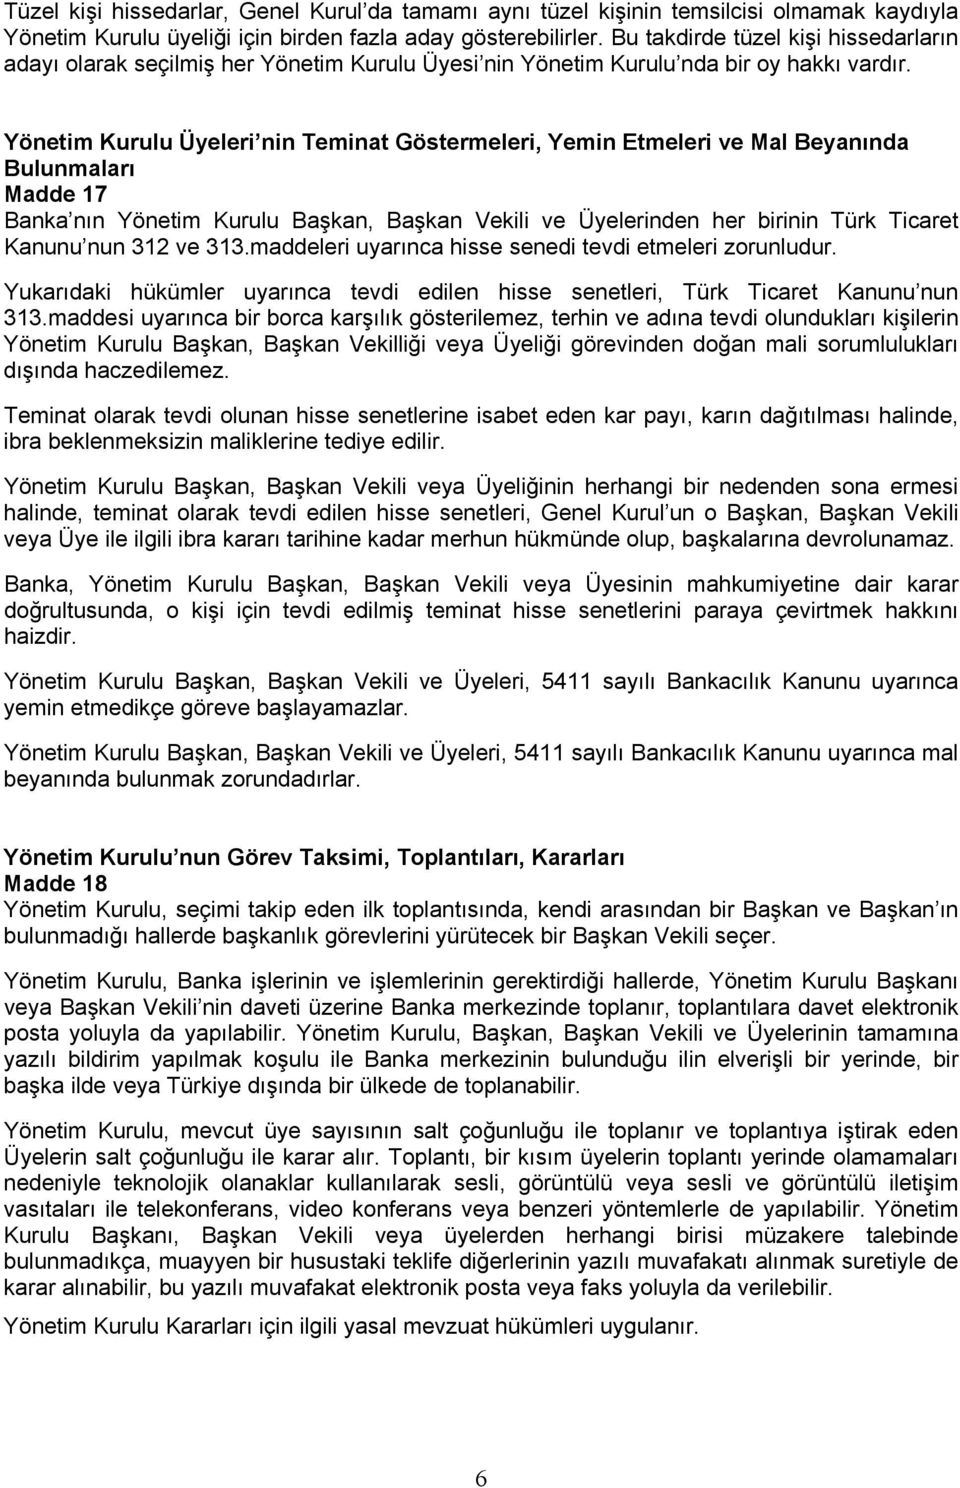 Yönetim Kurulu Üyeleri nin Teminat Göstermeleri, Yemin Etmeleri ve Mal Beyanında Bulunmaları Madde 17 Banka nın Yönetim Kurulu Başkan, Başkan Vekili ve Üyelerinden her birinin Türk Ticaret Kanunu nun